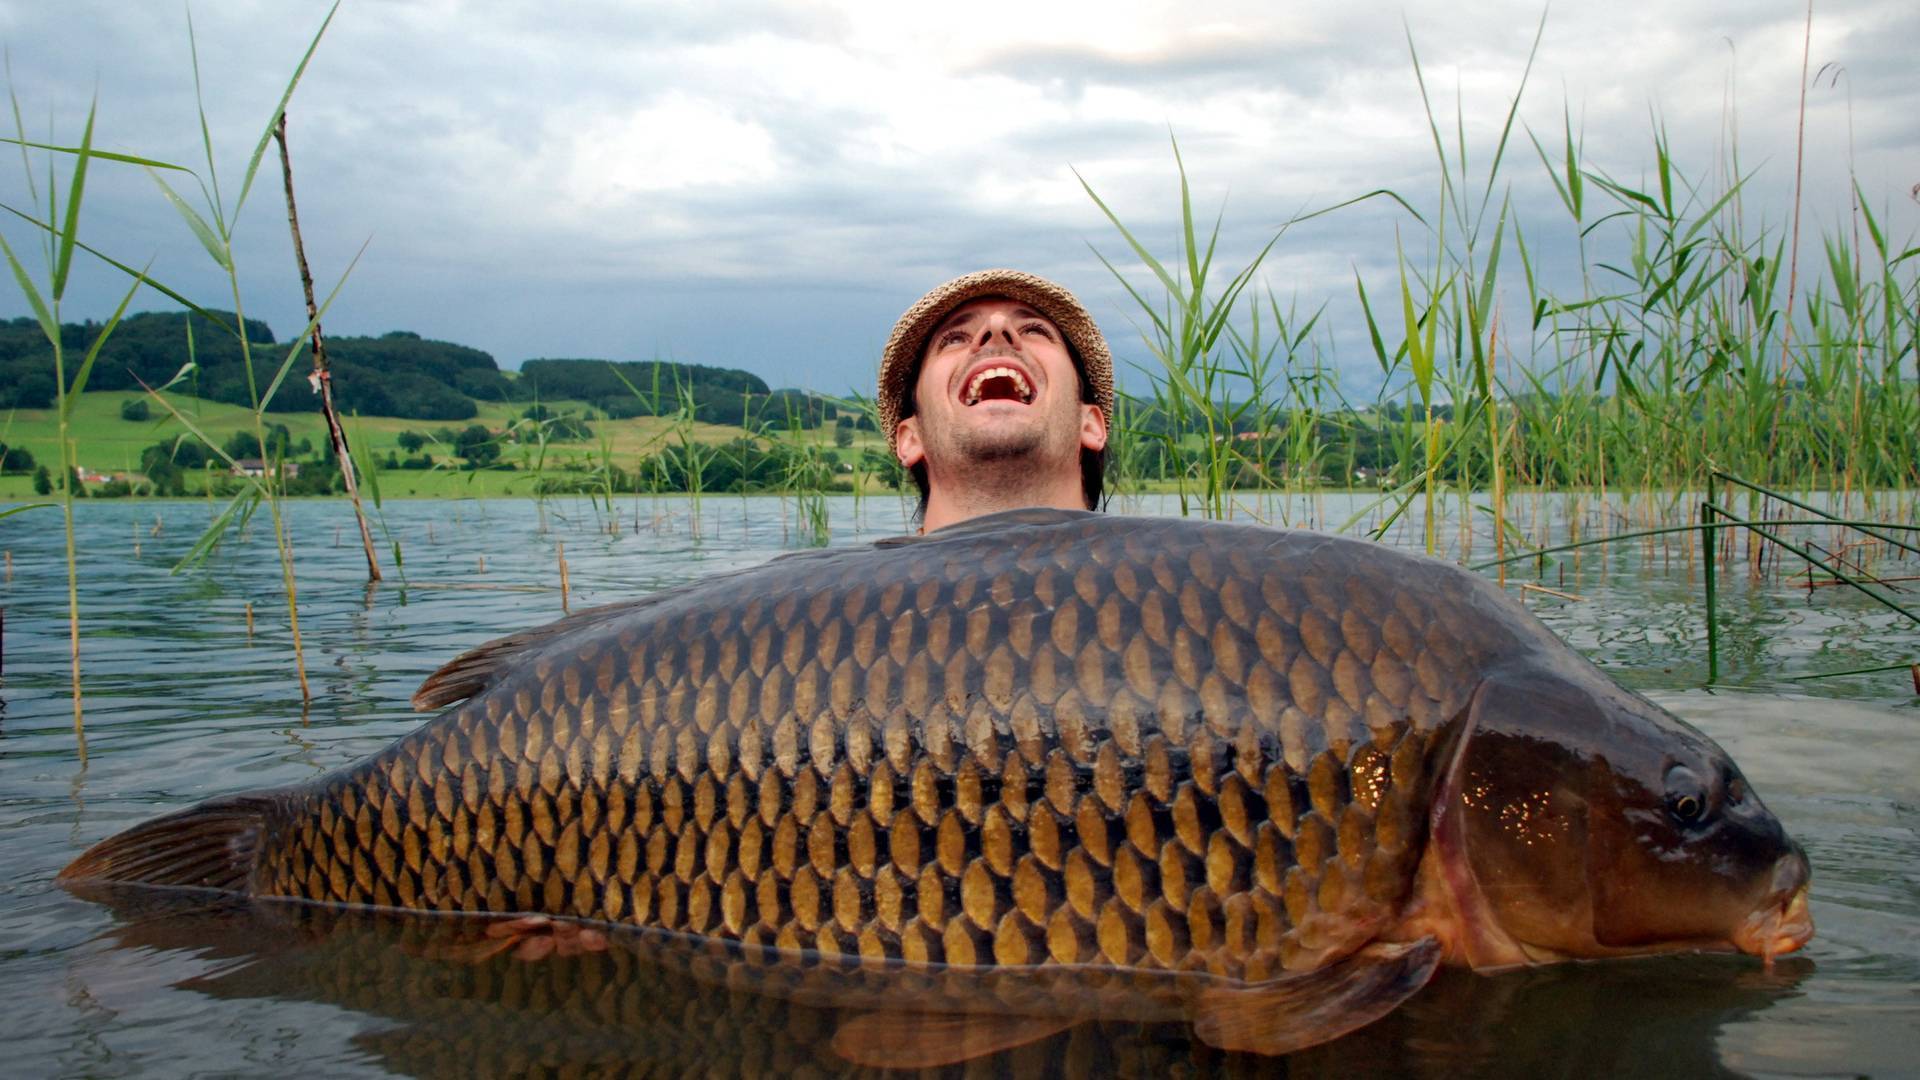 Рыбалка на великих озерах - секреты успешной рыбалки в сердце природы